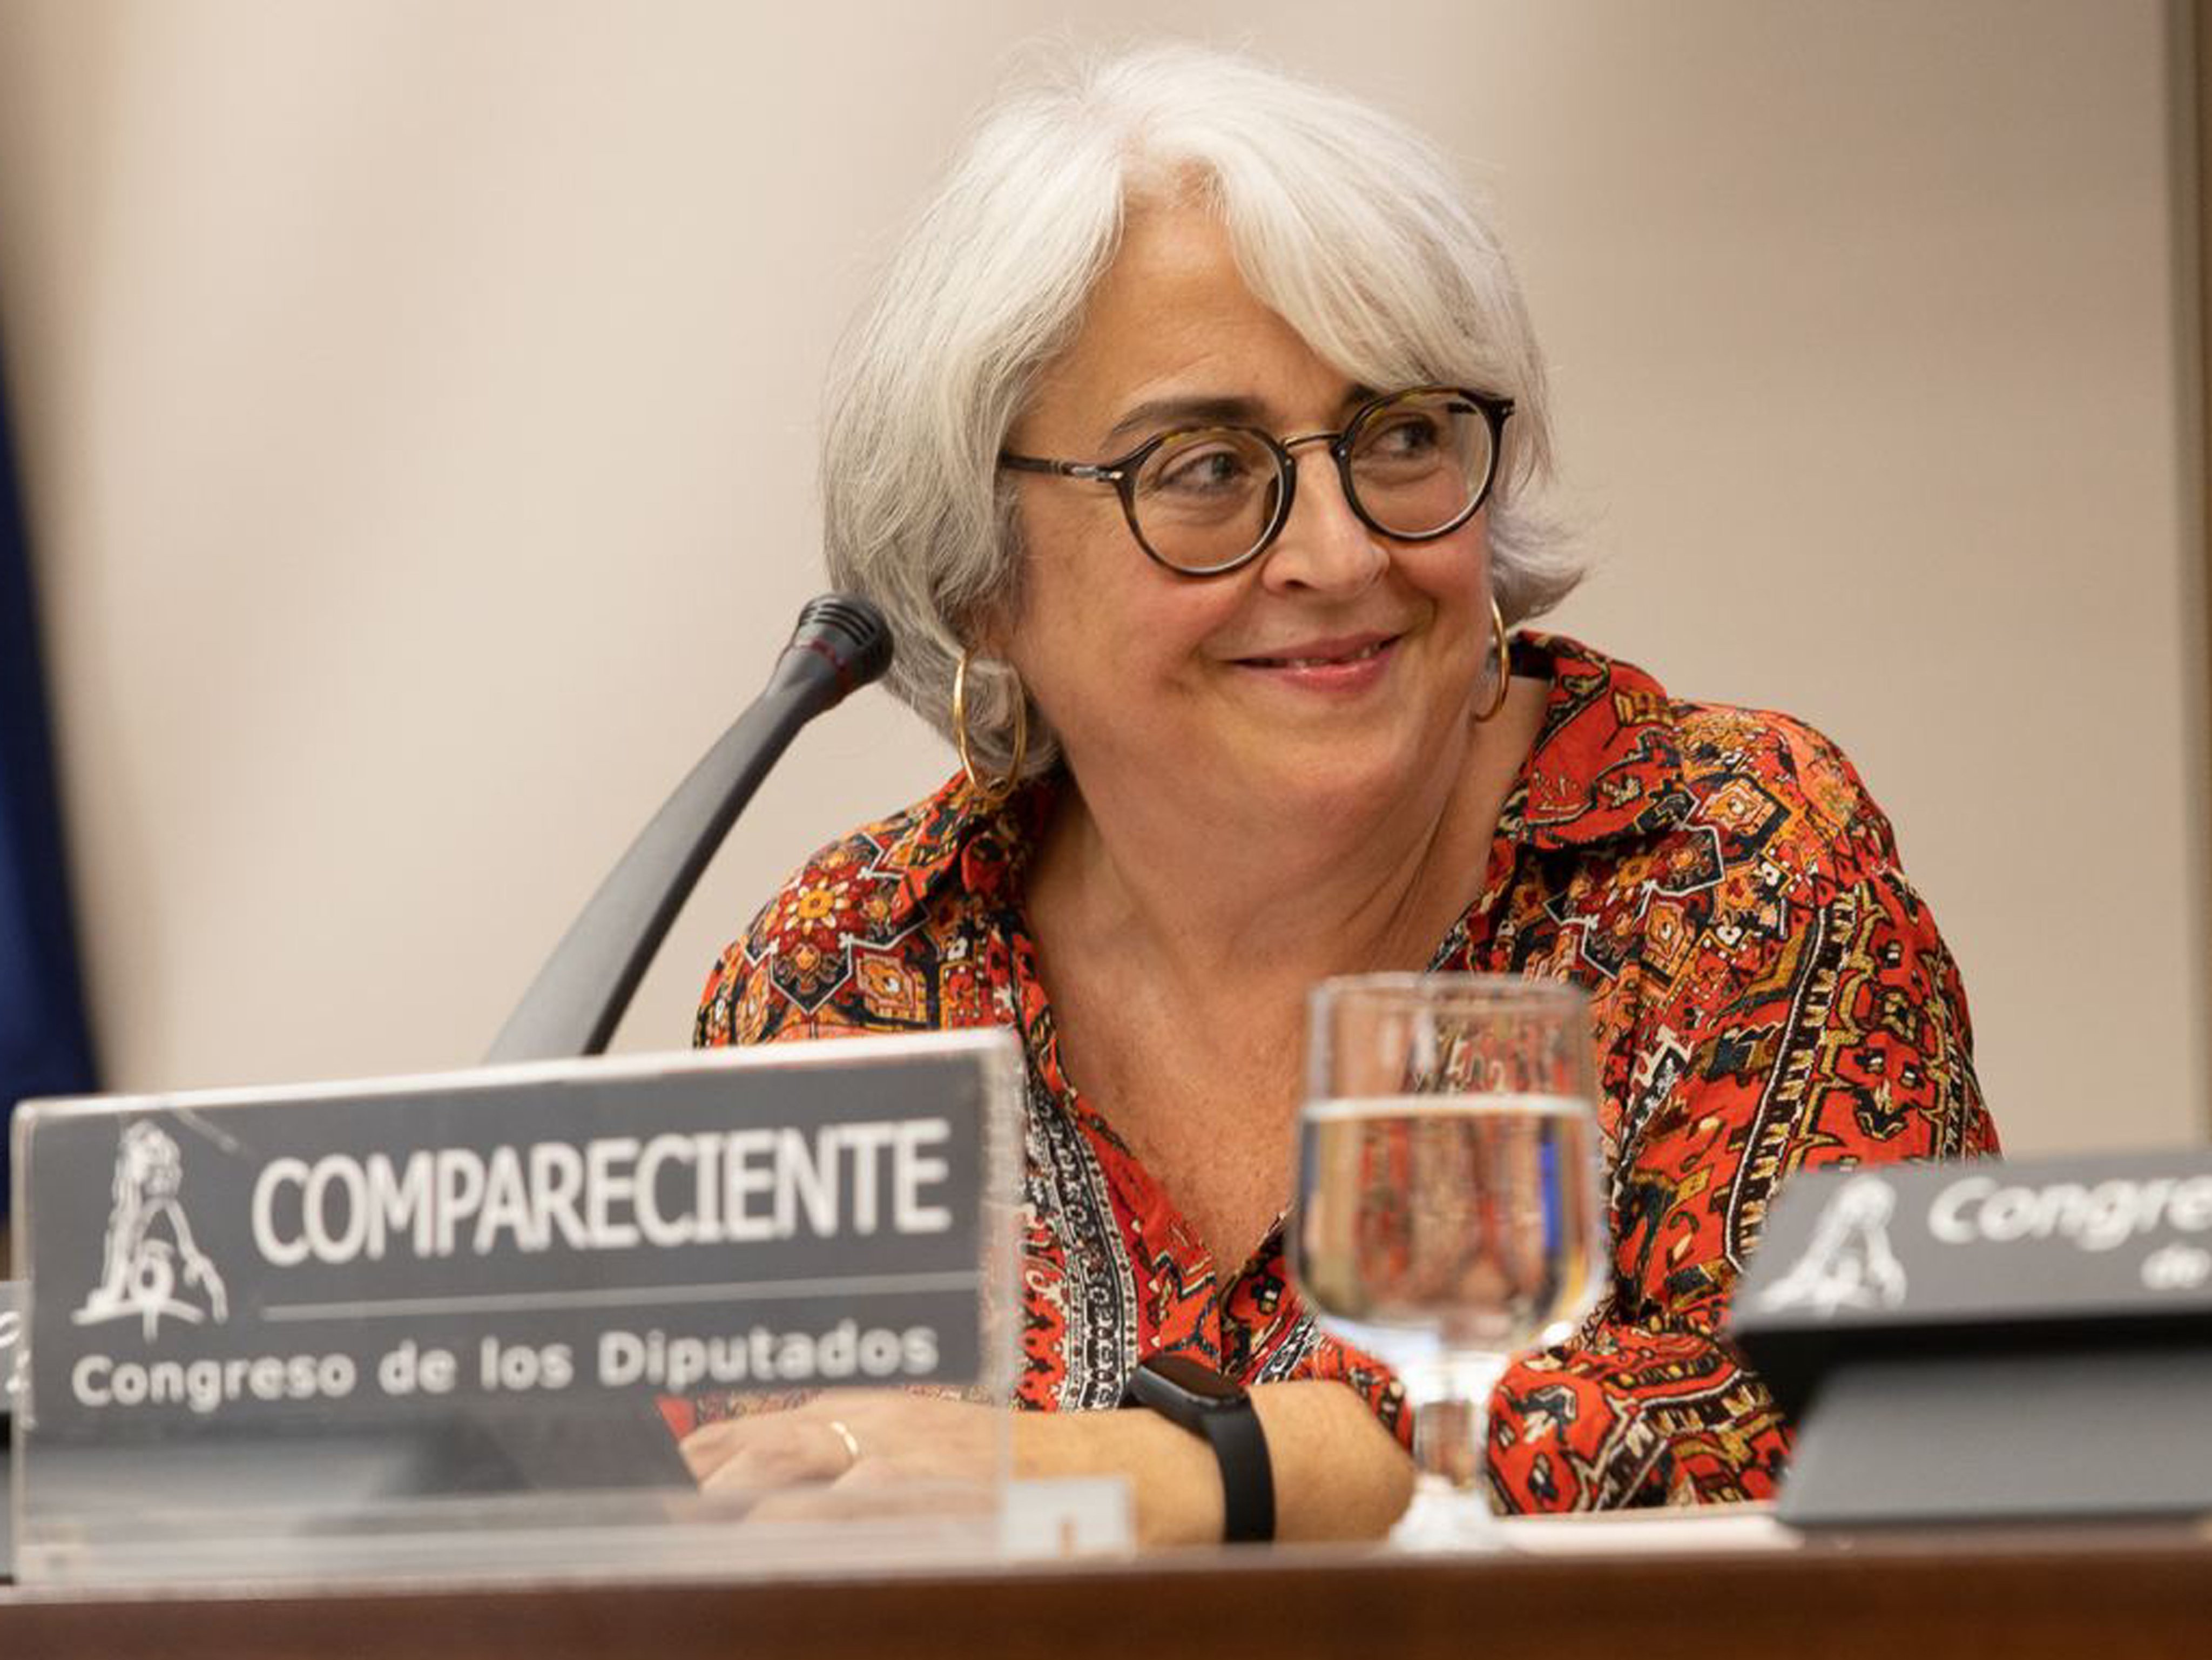 Rosa Balaguer durant la ponència al Congrés dels Diputats.